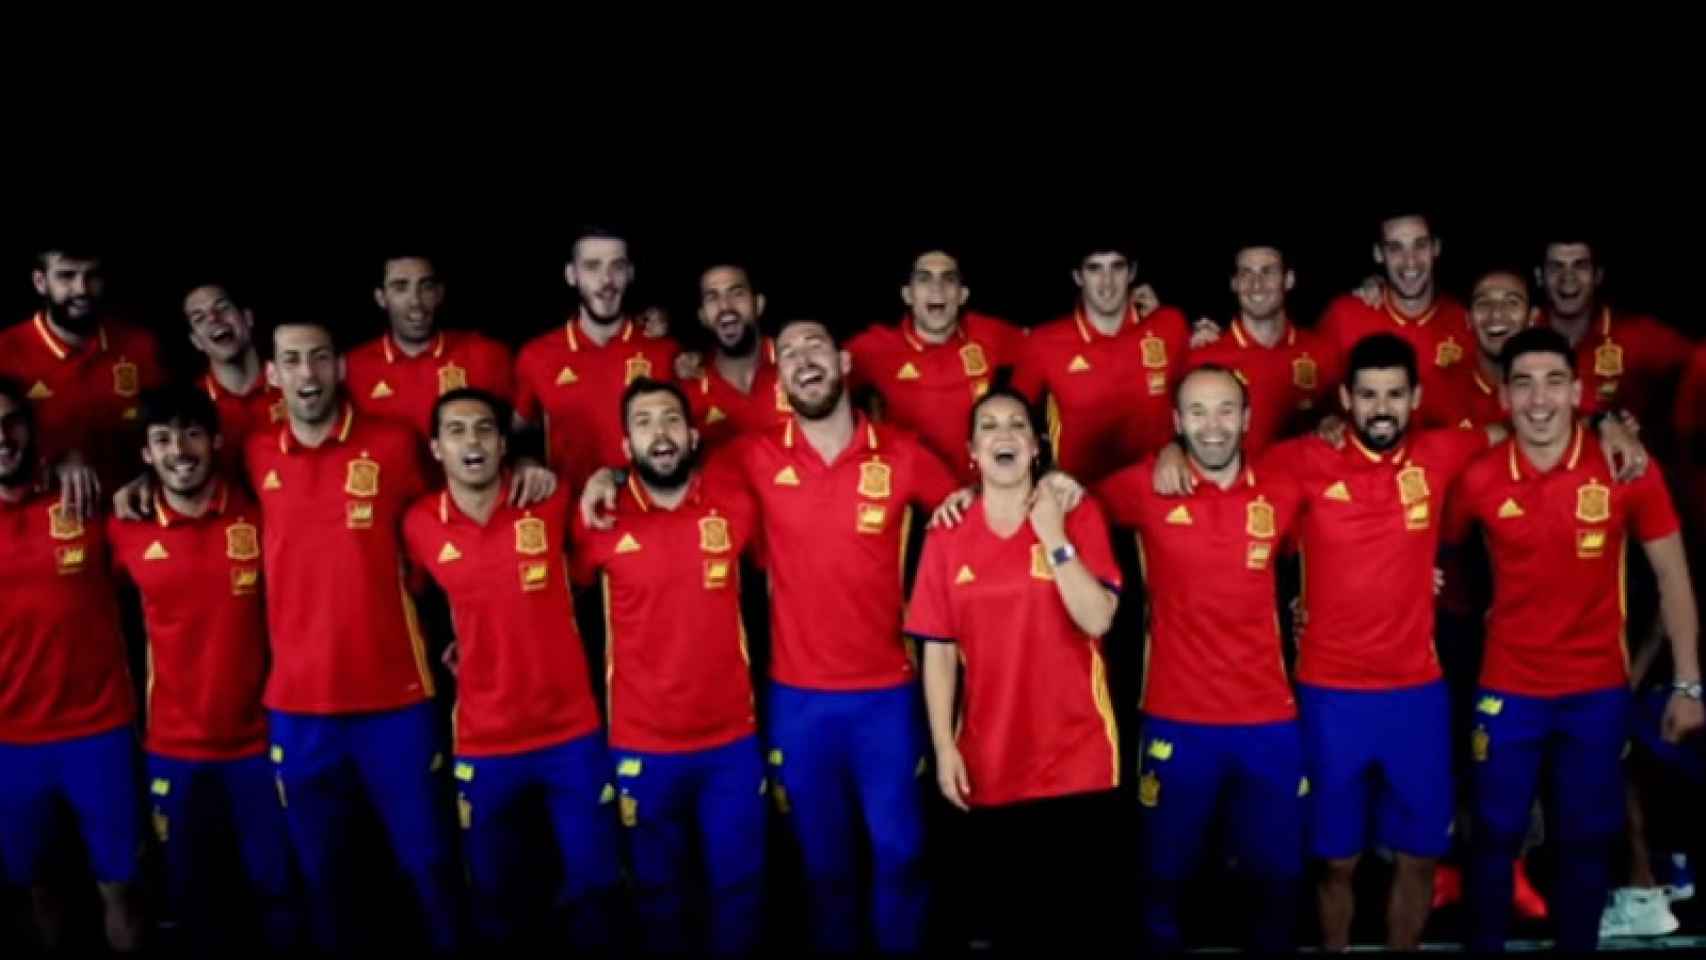 La Selección Española durante la producción del videoclip 'La Roja Baila' para animar al equipo durante la Eurocopa 2016.